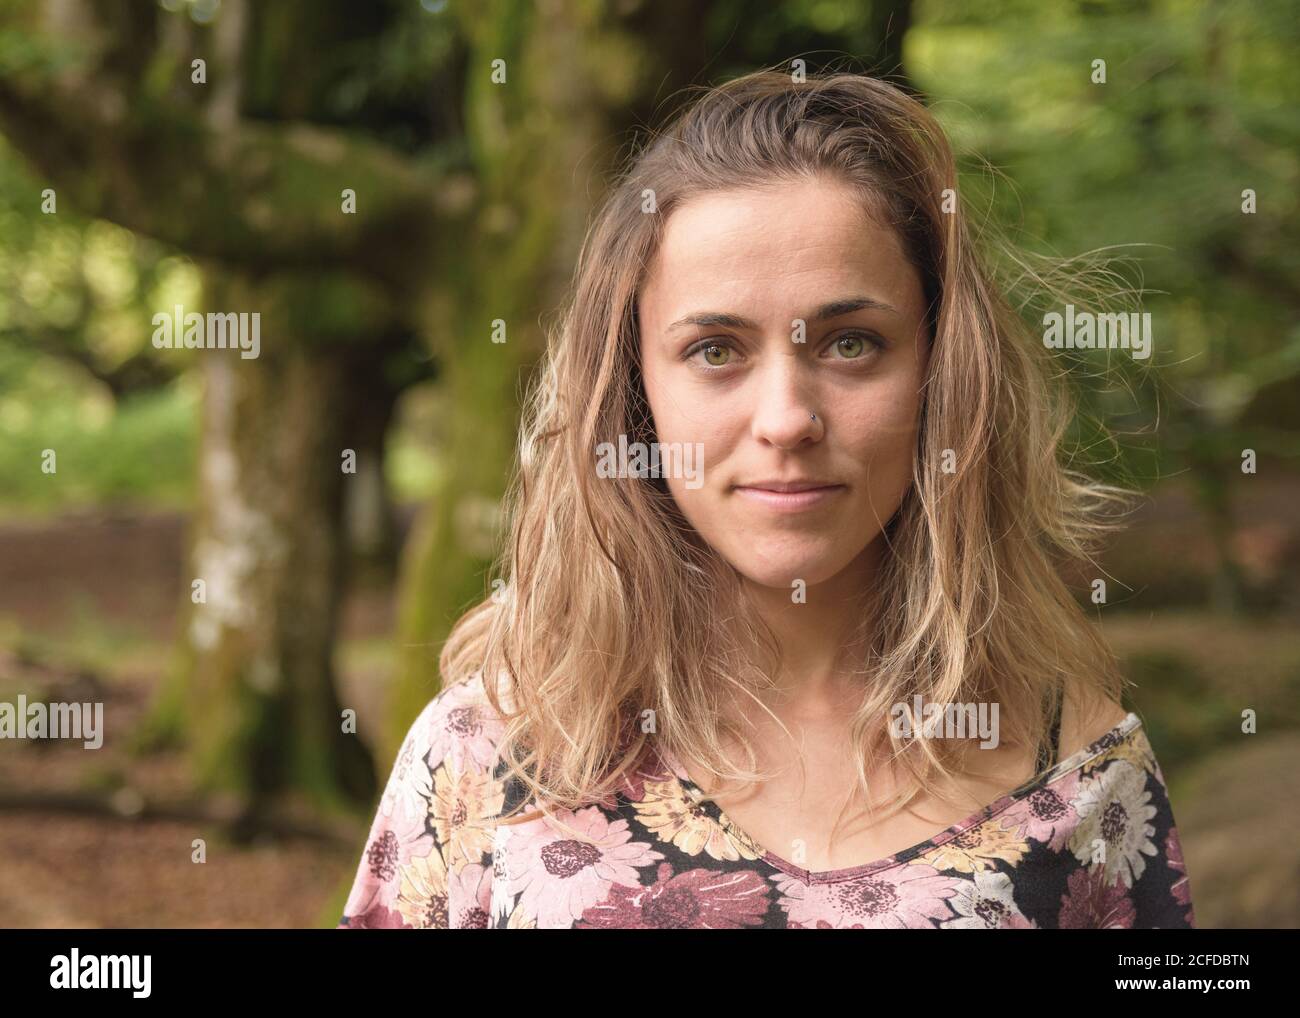 Ritratto di bella donna sognante con occhi verdi guardando la fotocamera su sfondo di alberi mossy Foto Stock